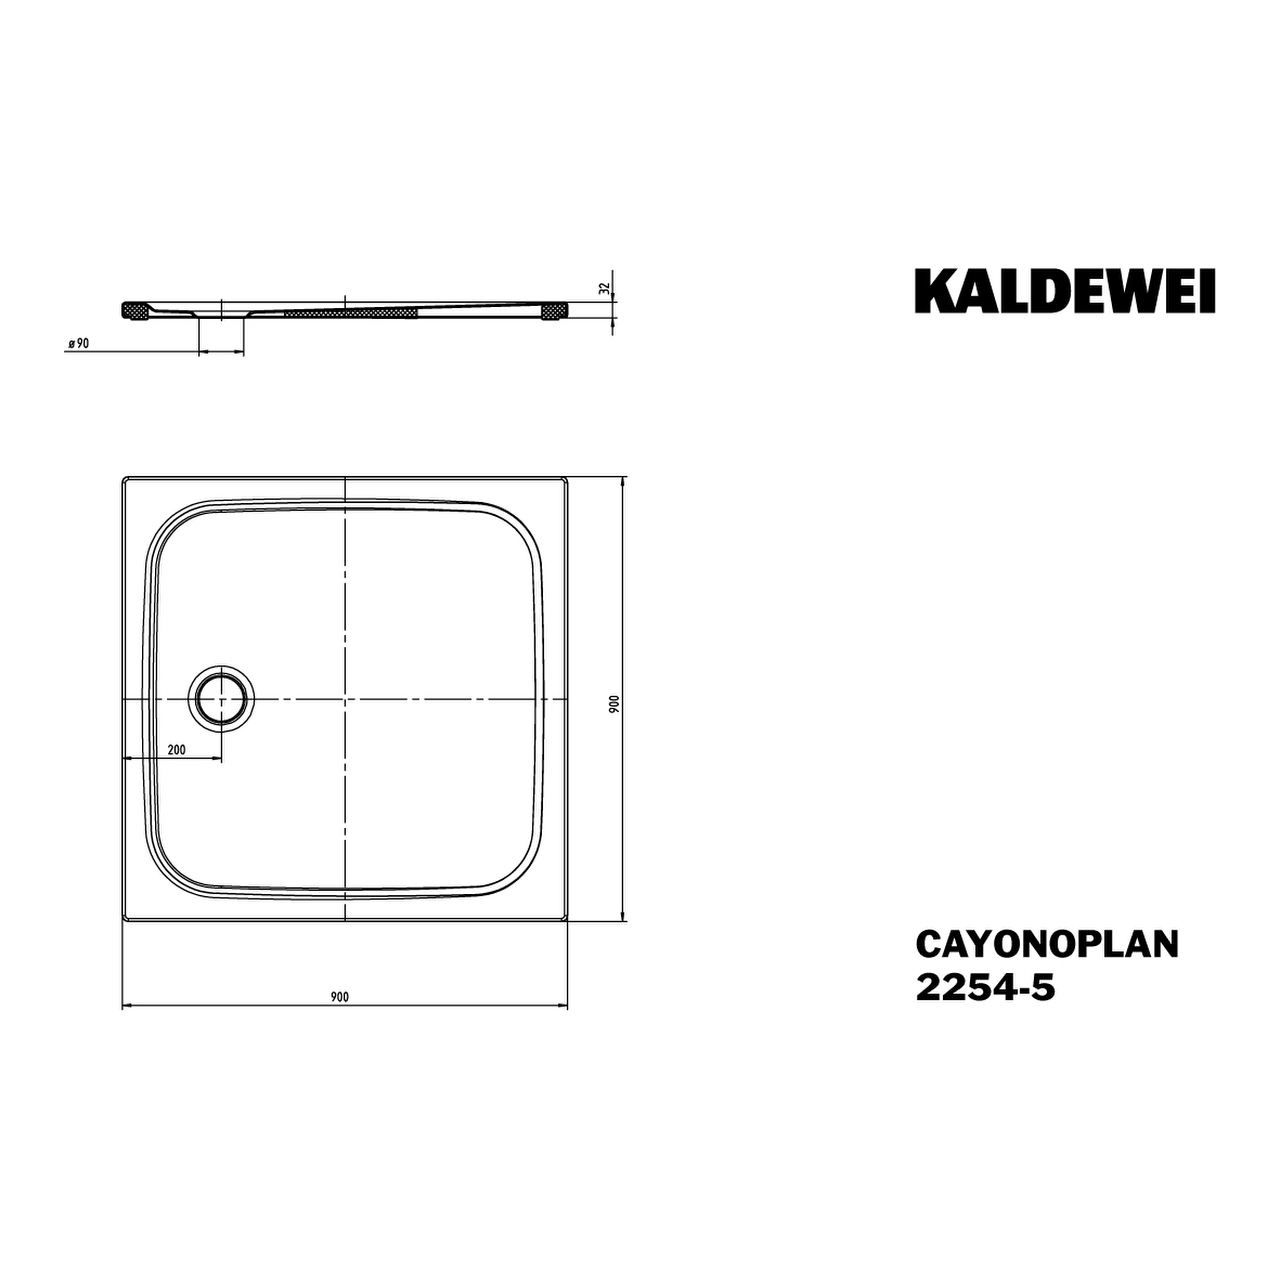 Kaldewei quadrat Duschwanne „Cayonoplan“ 90 × 90 cm in manhattan mit Antislip